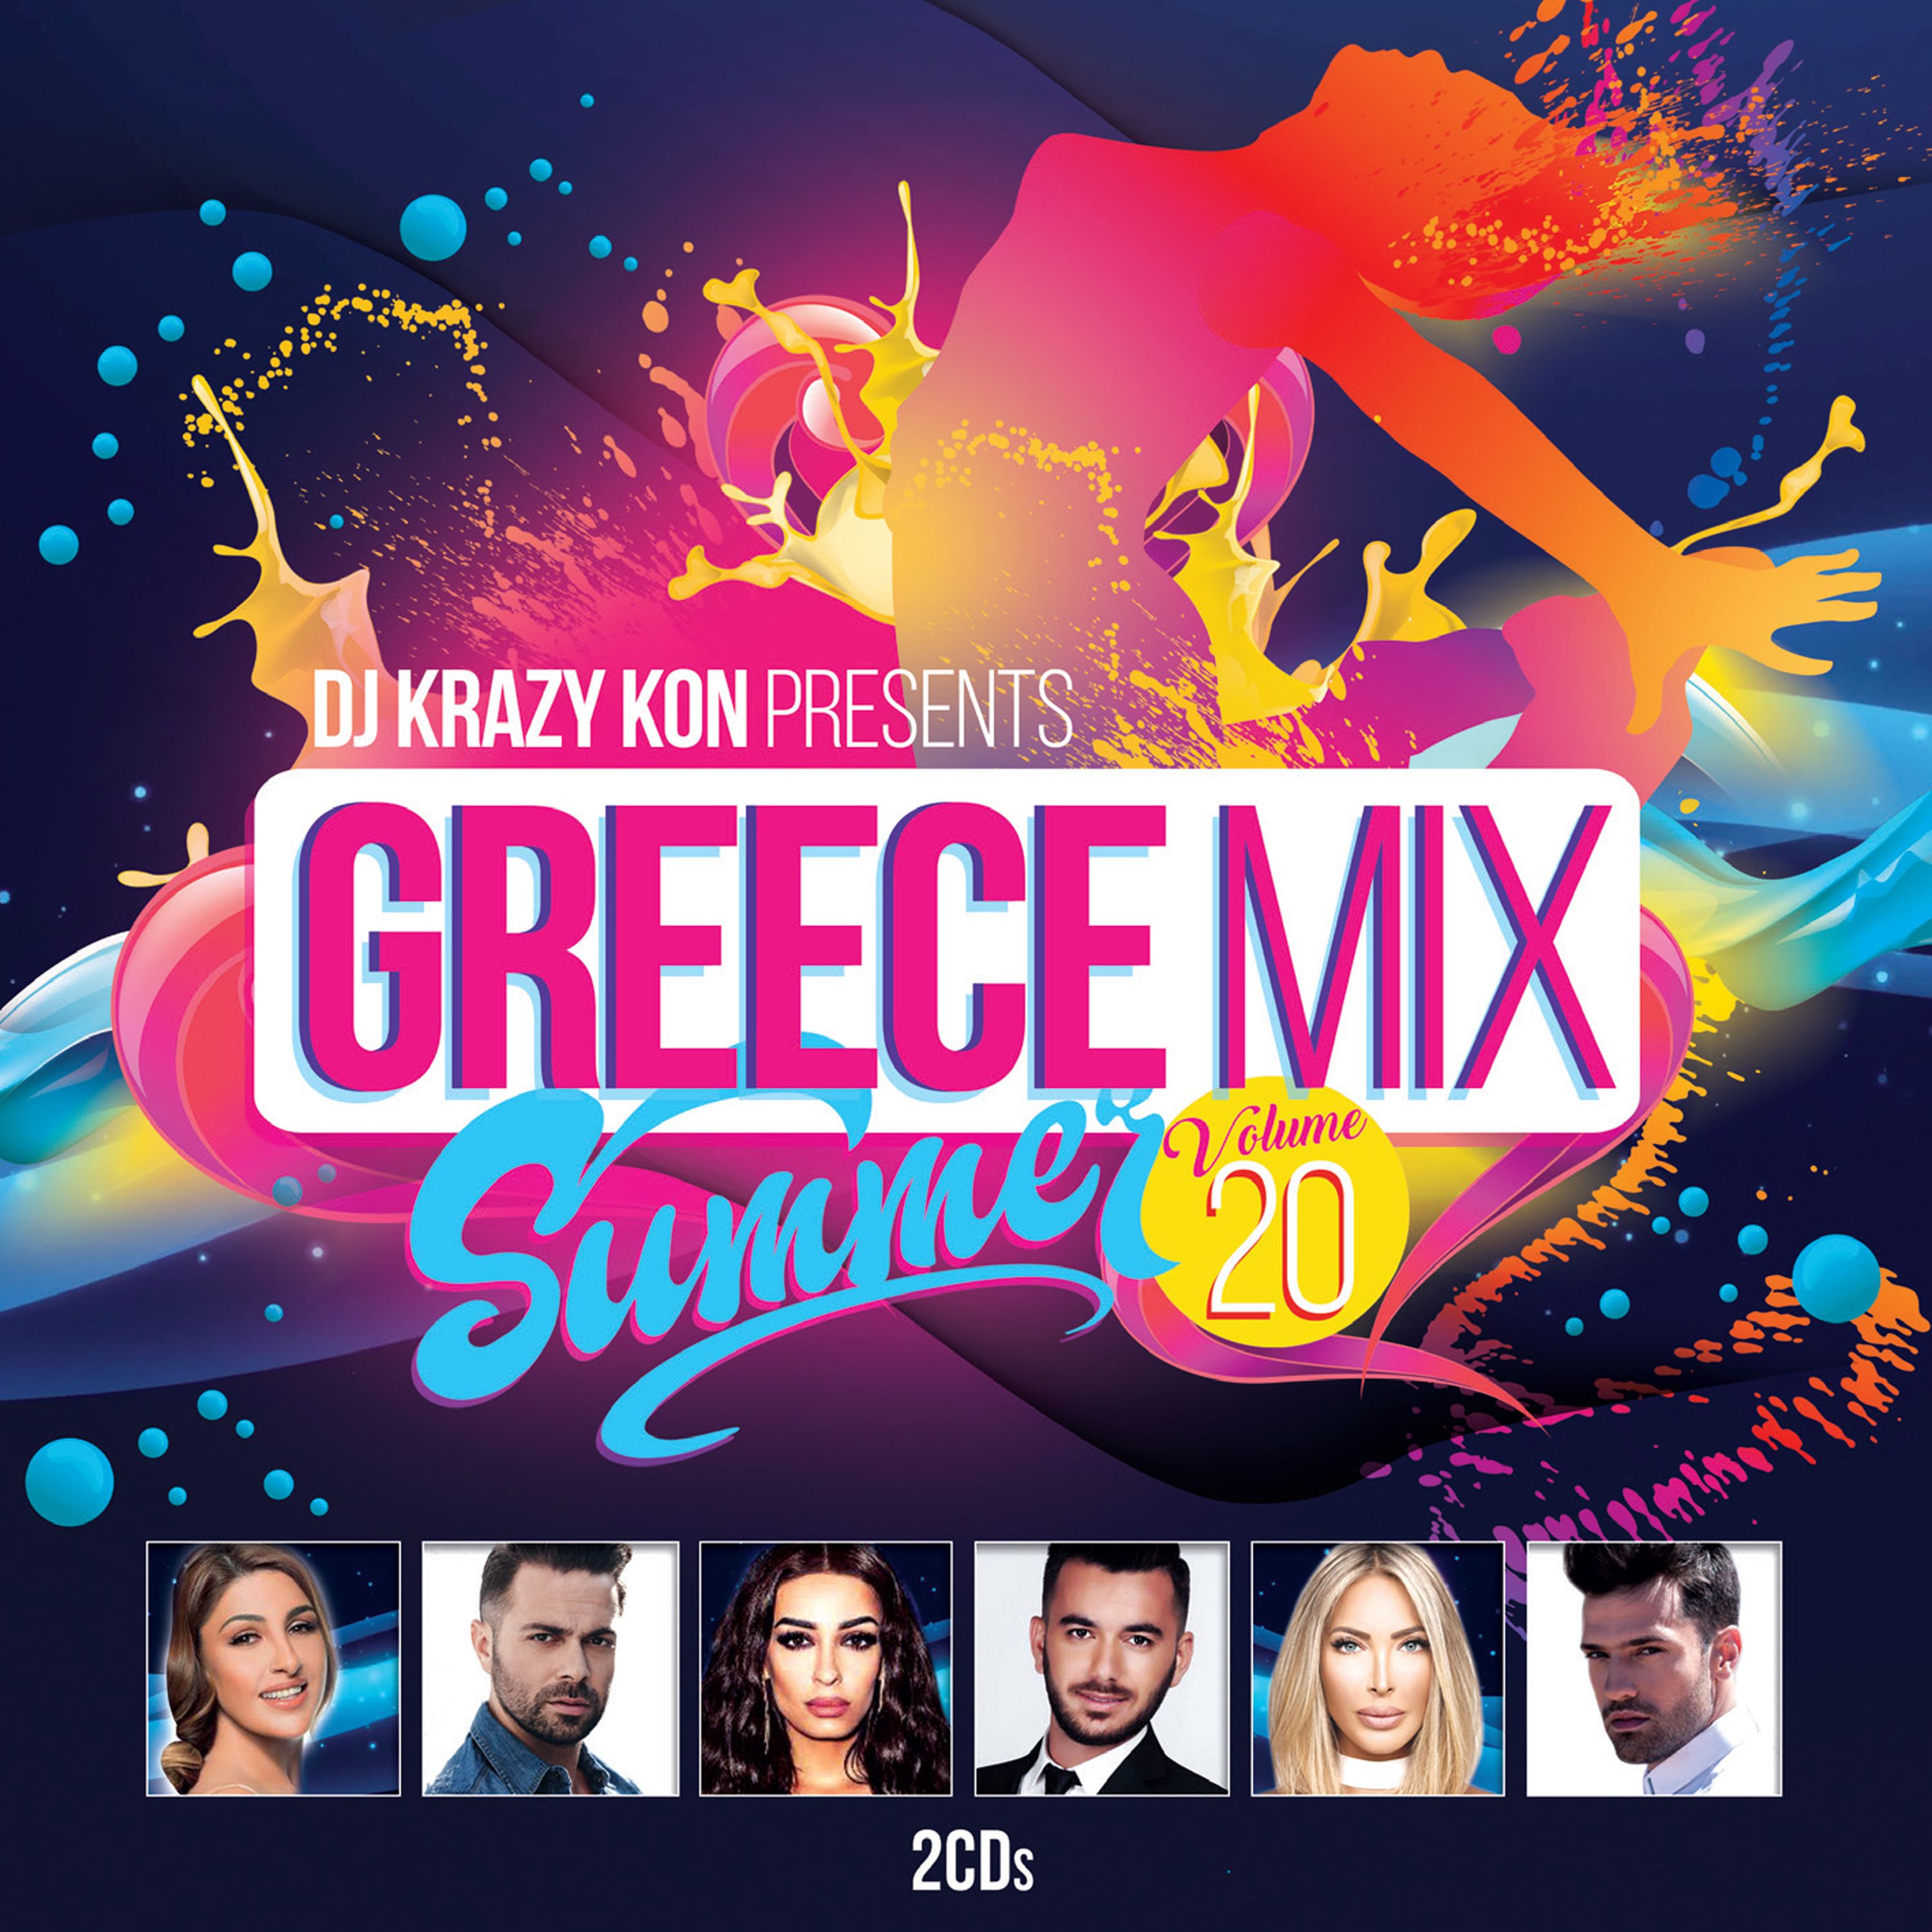 DJ Krazy Kon Presents Greece Mix, Vol. 20 (Continuous Mix 2)